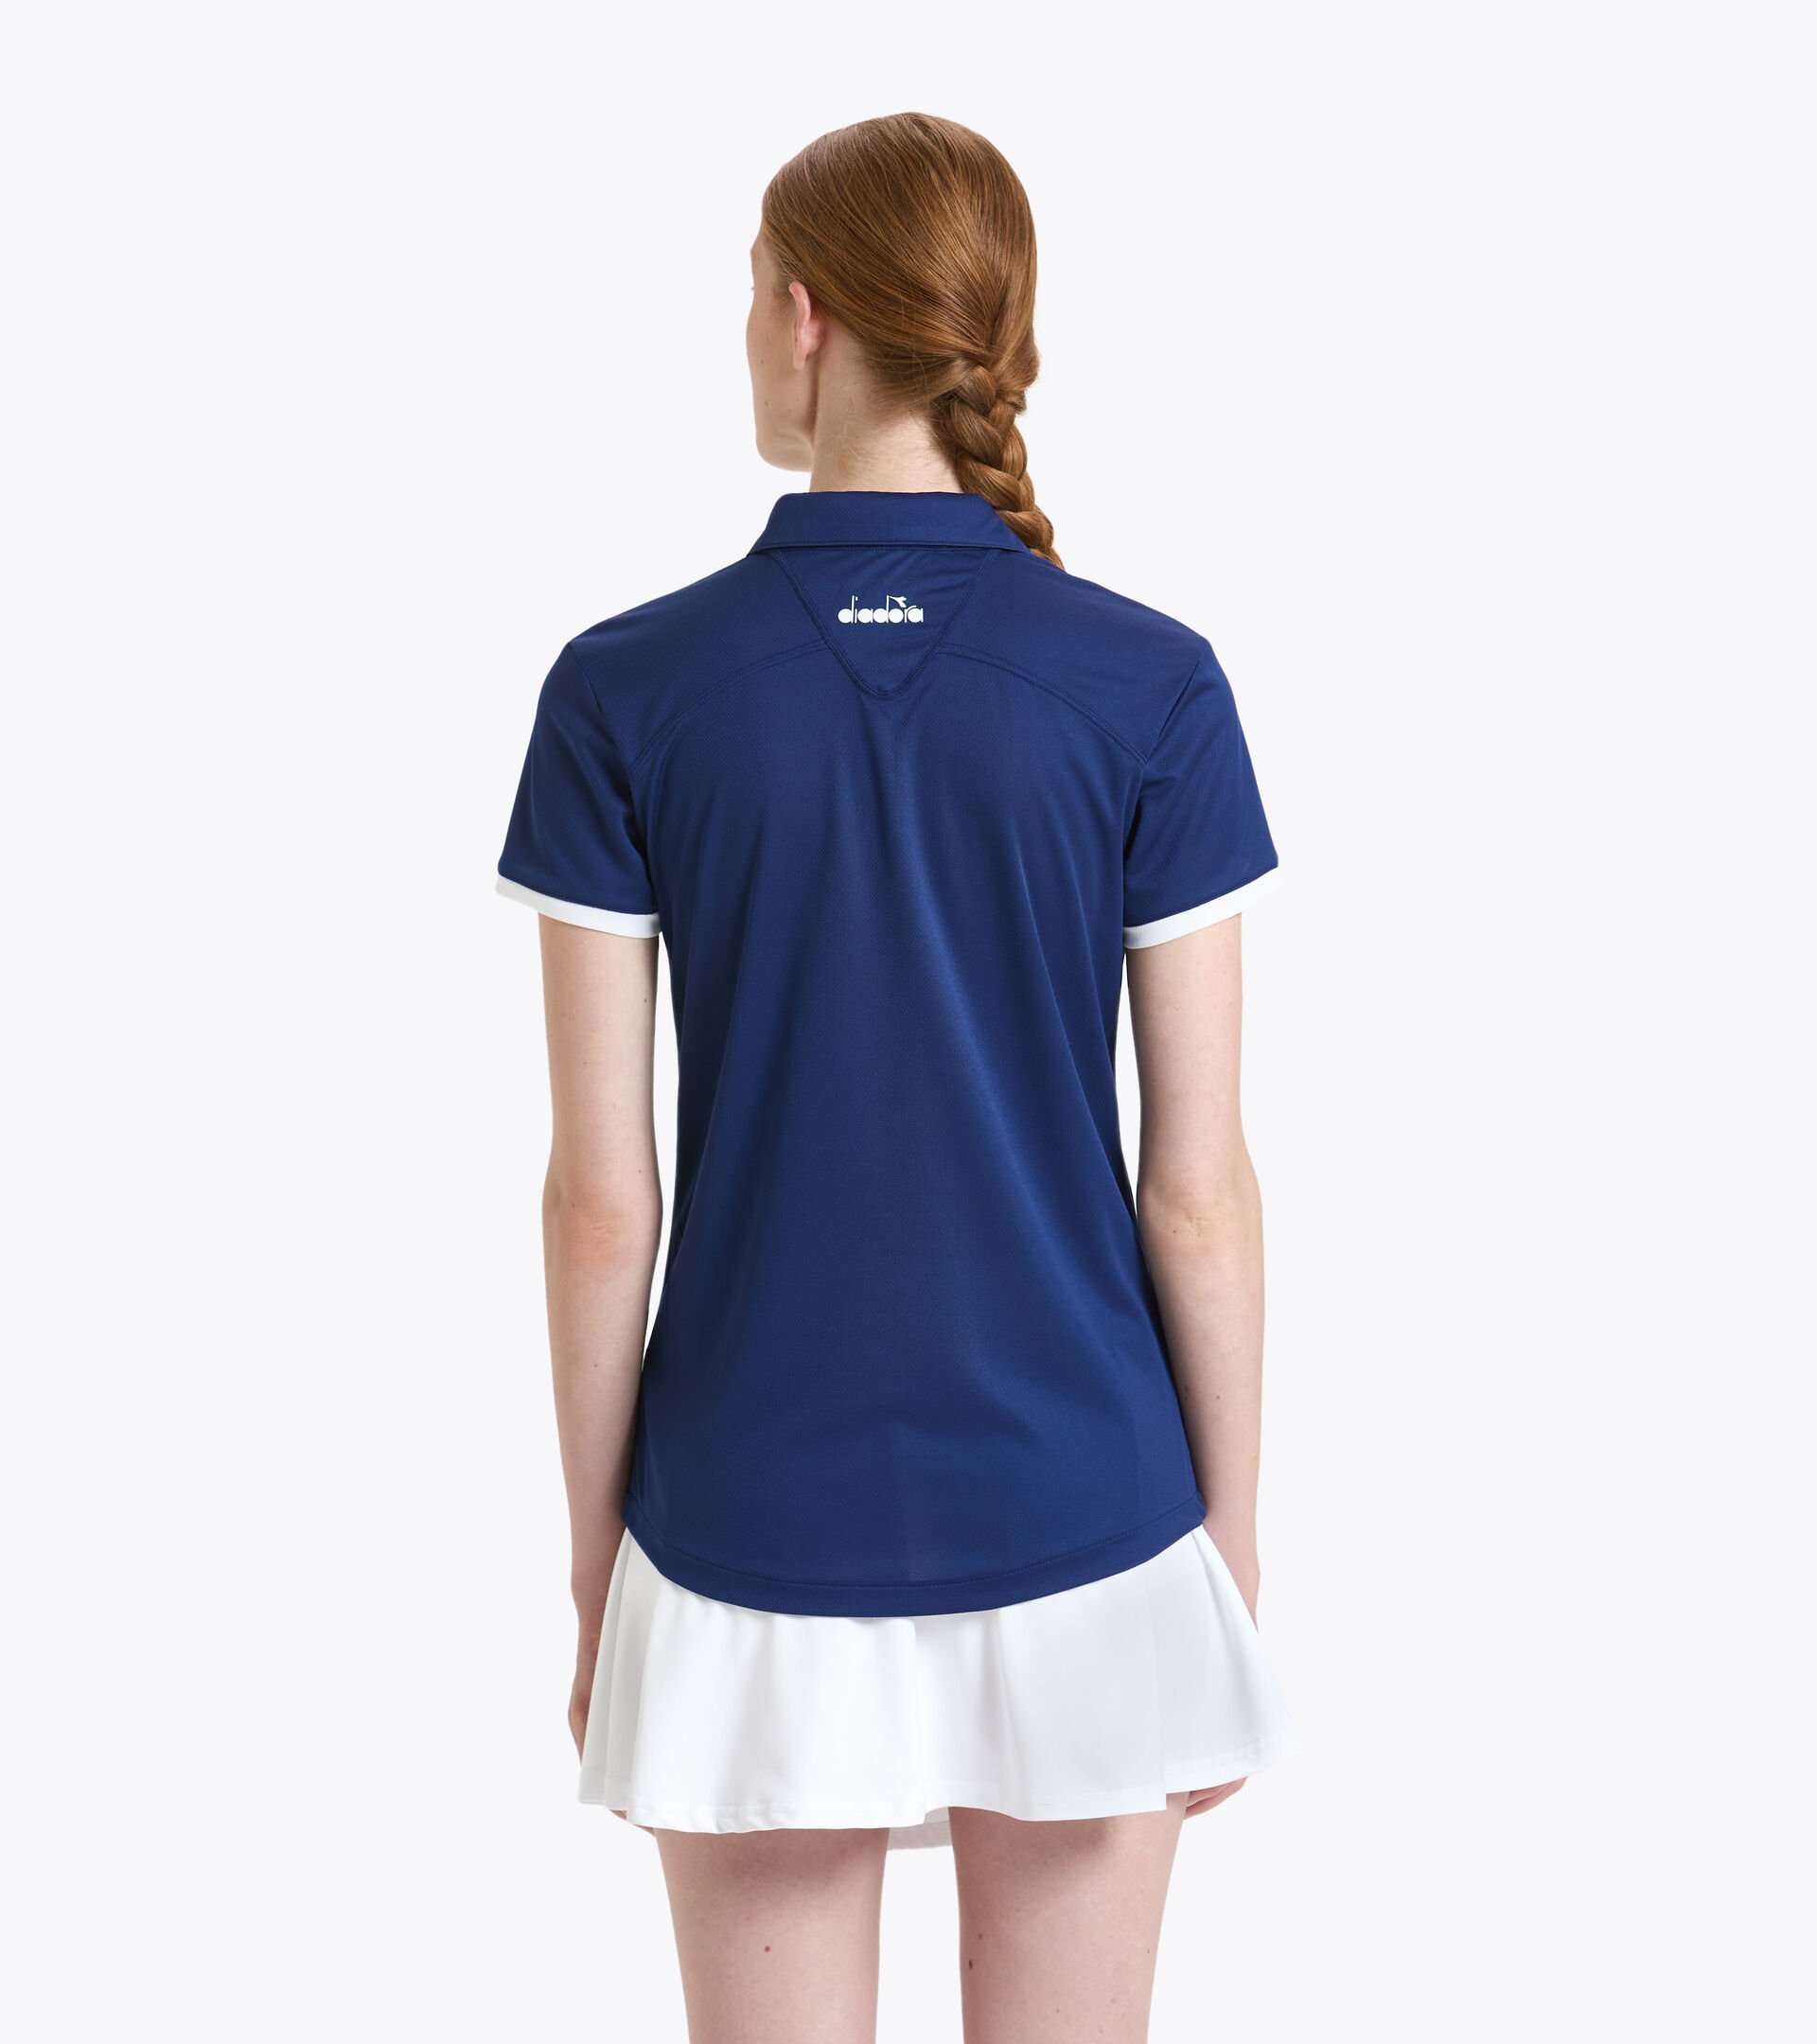 Tennis polo shirt - Women L. POLO COURT SALTIRE NAVY - Diadora